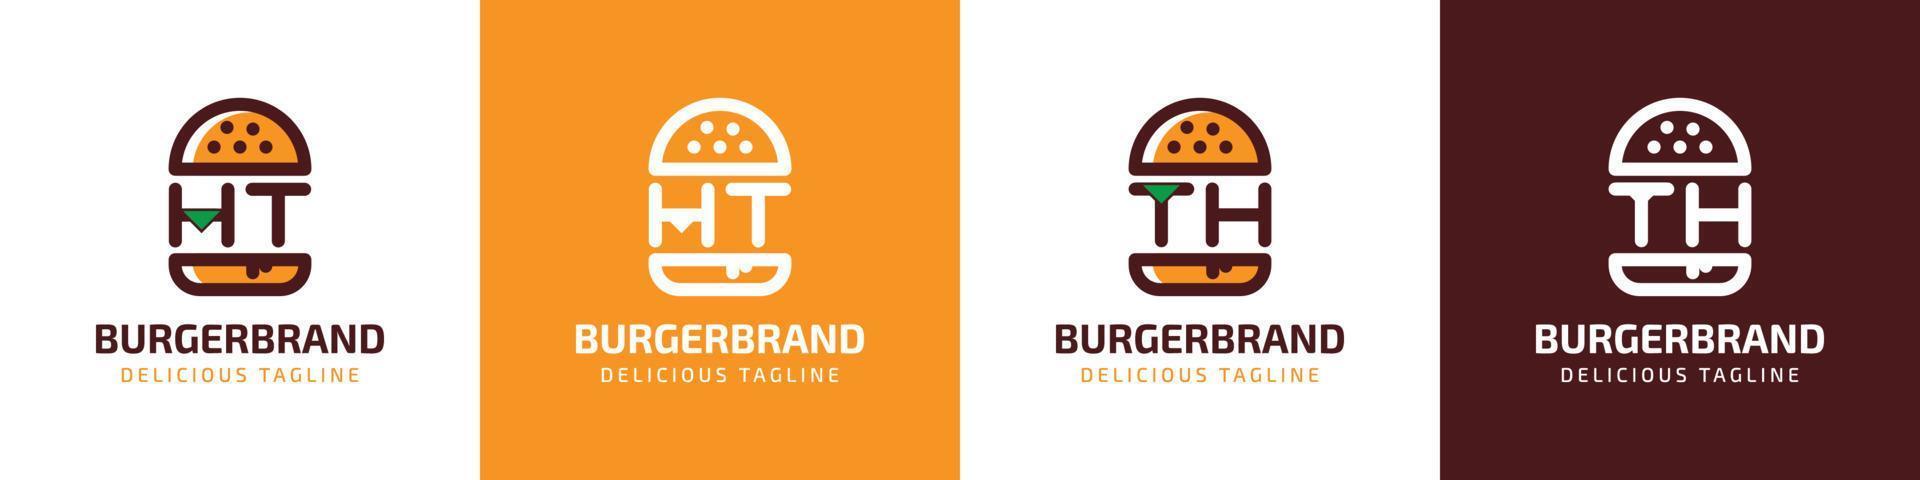 carta ht e º hamburguer logotipo, adequado para qualquer o negócio relacionado para hamburguer com ht ou º iniciais. vetor